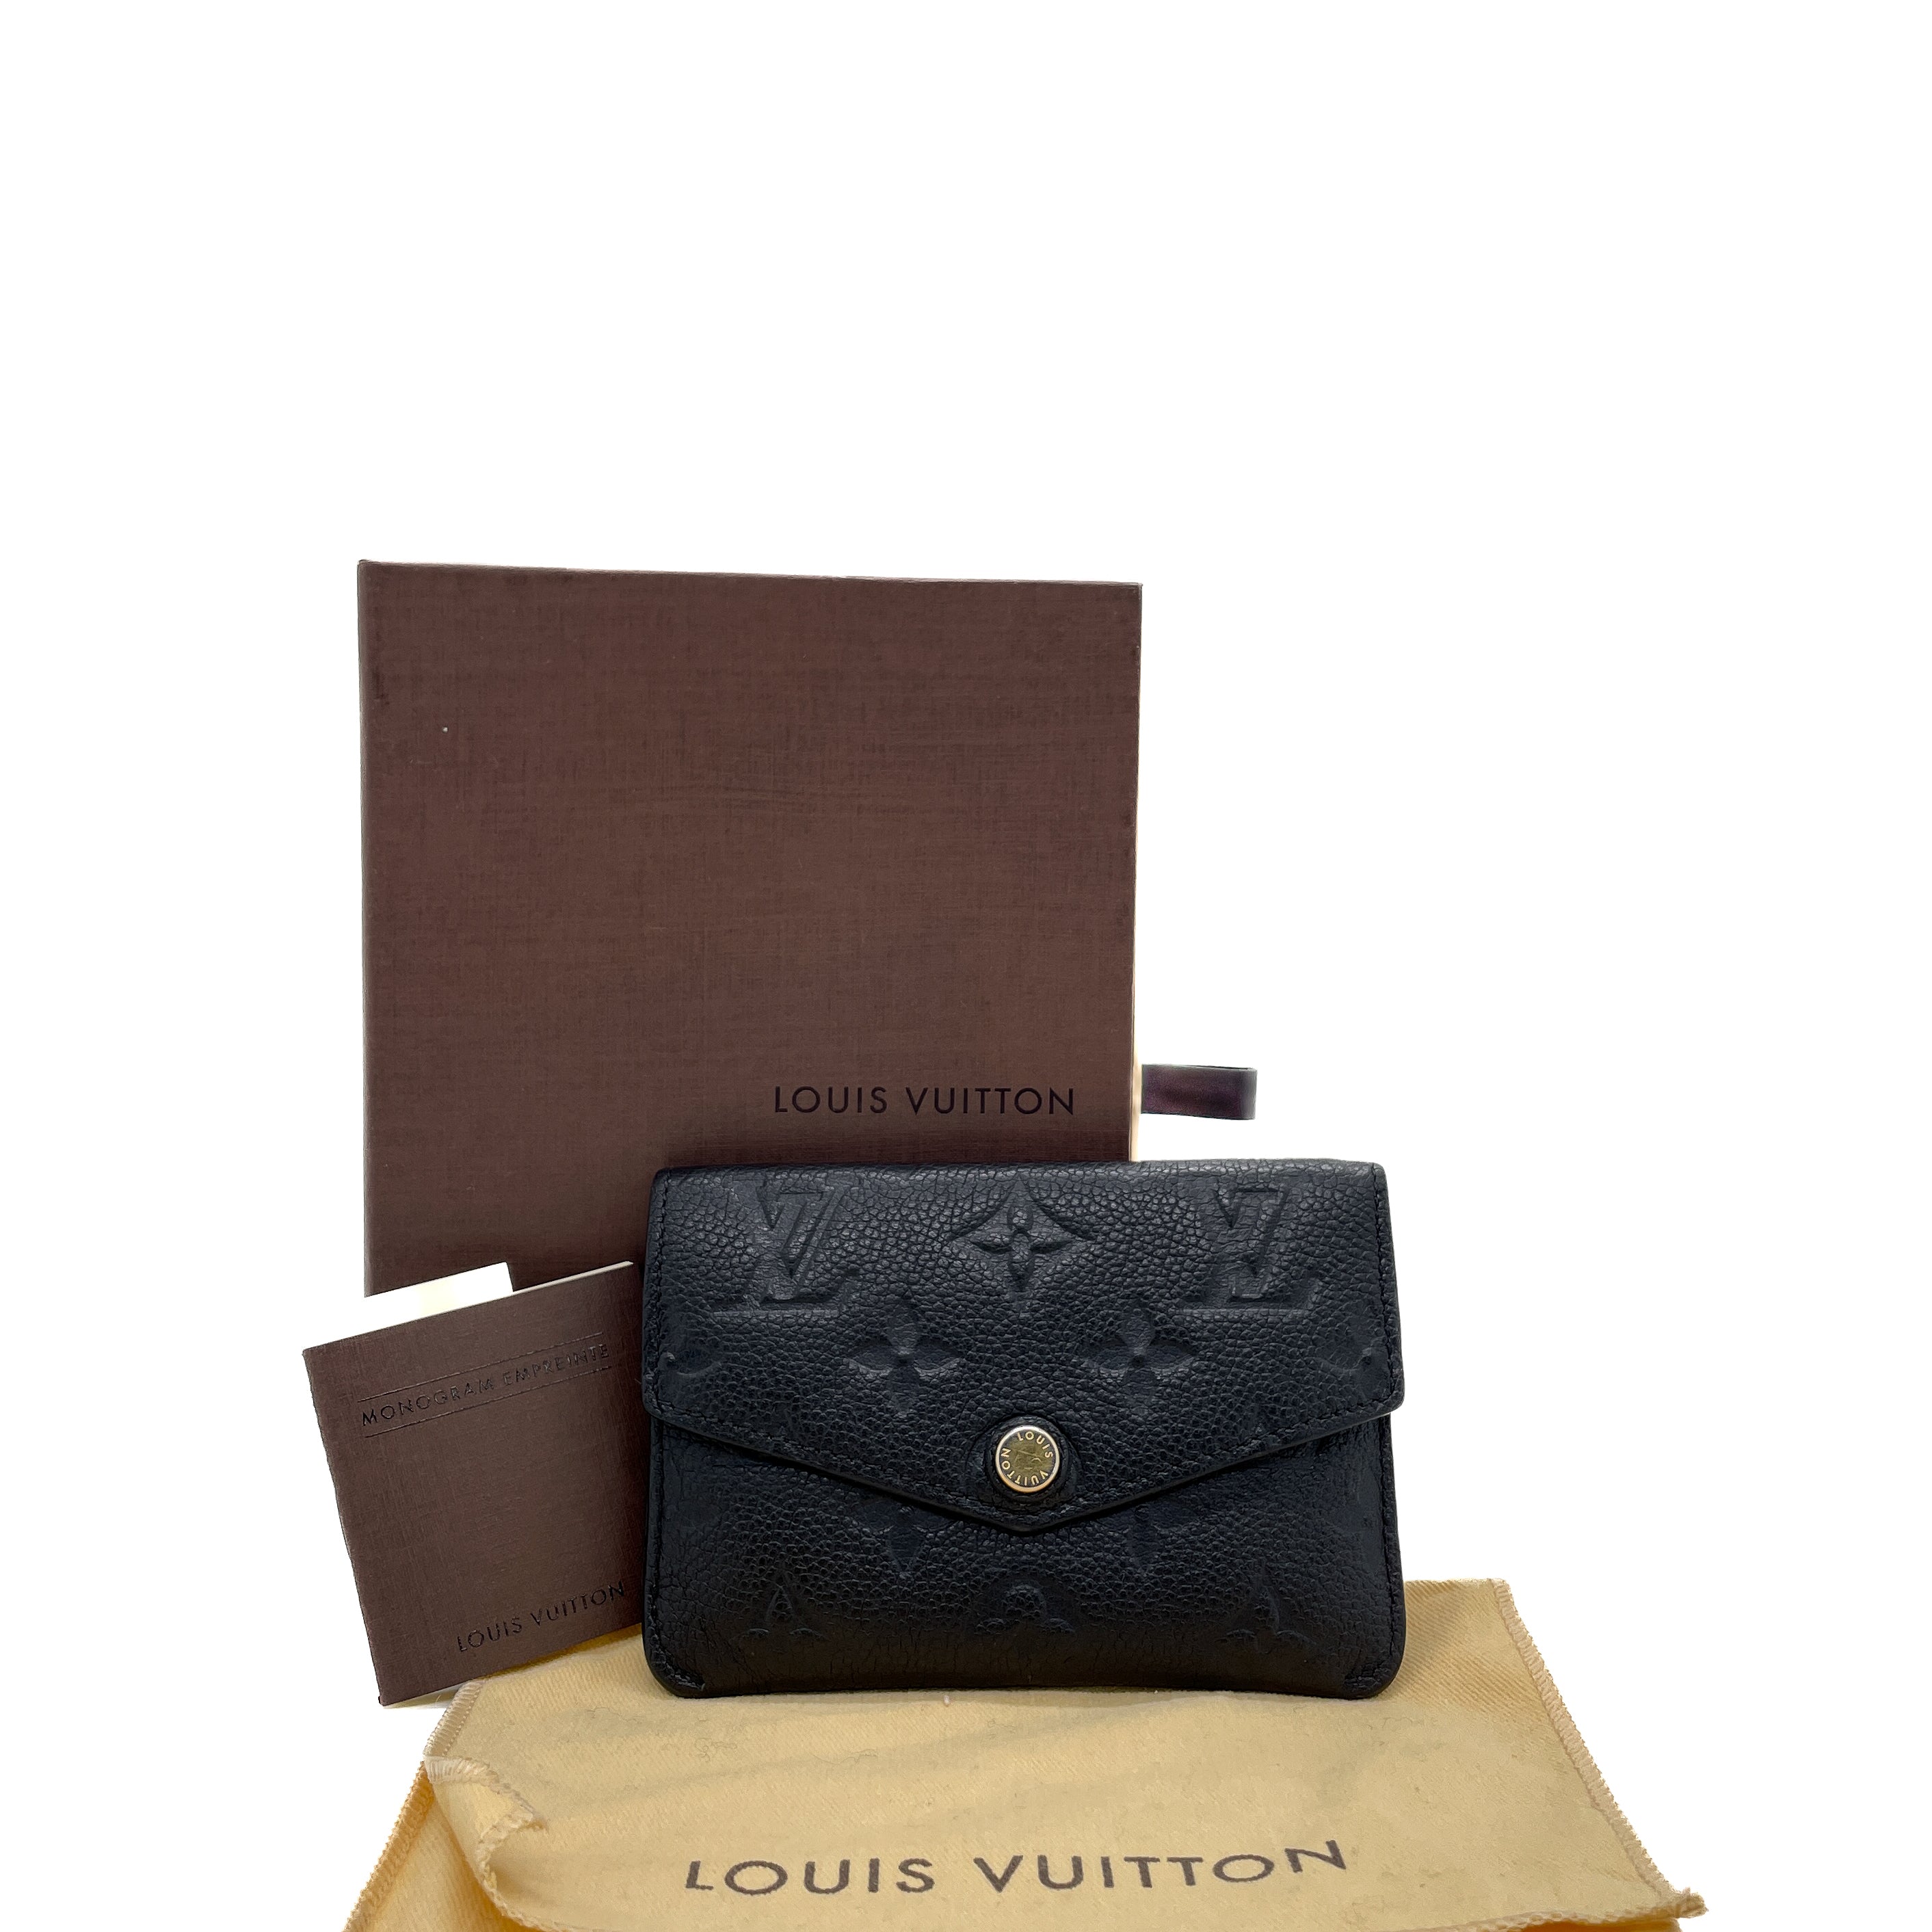 Louis Vuitton Key Pouch in Poppy Empreinte - SOLD